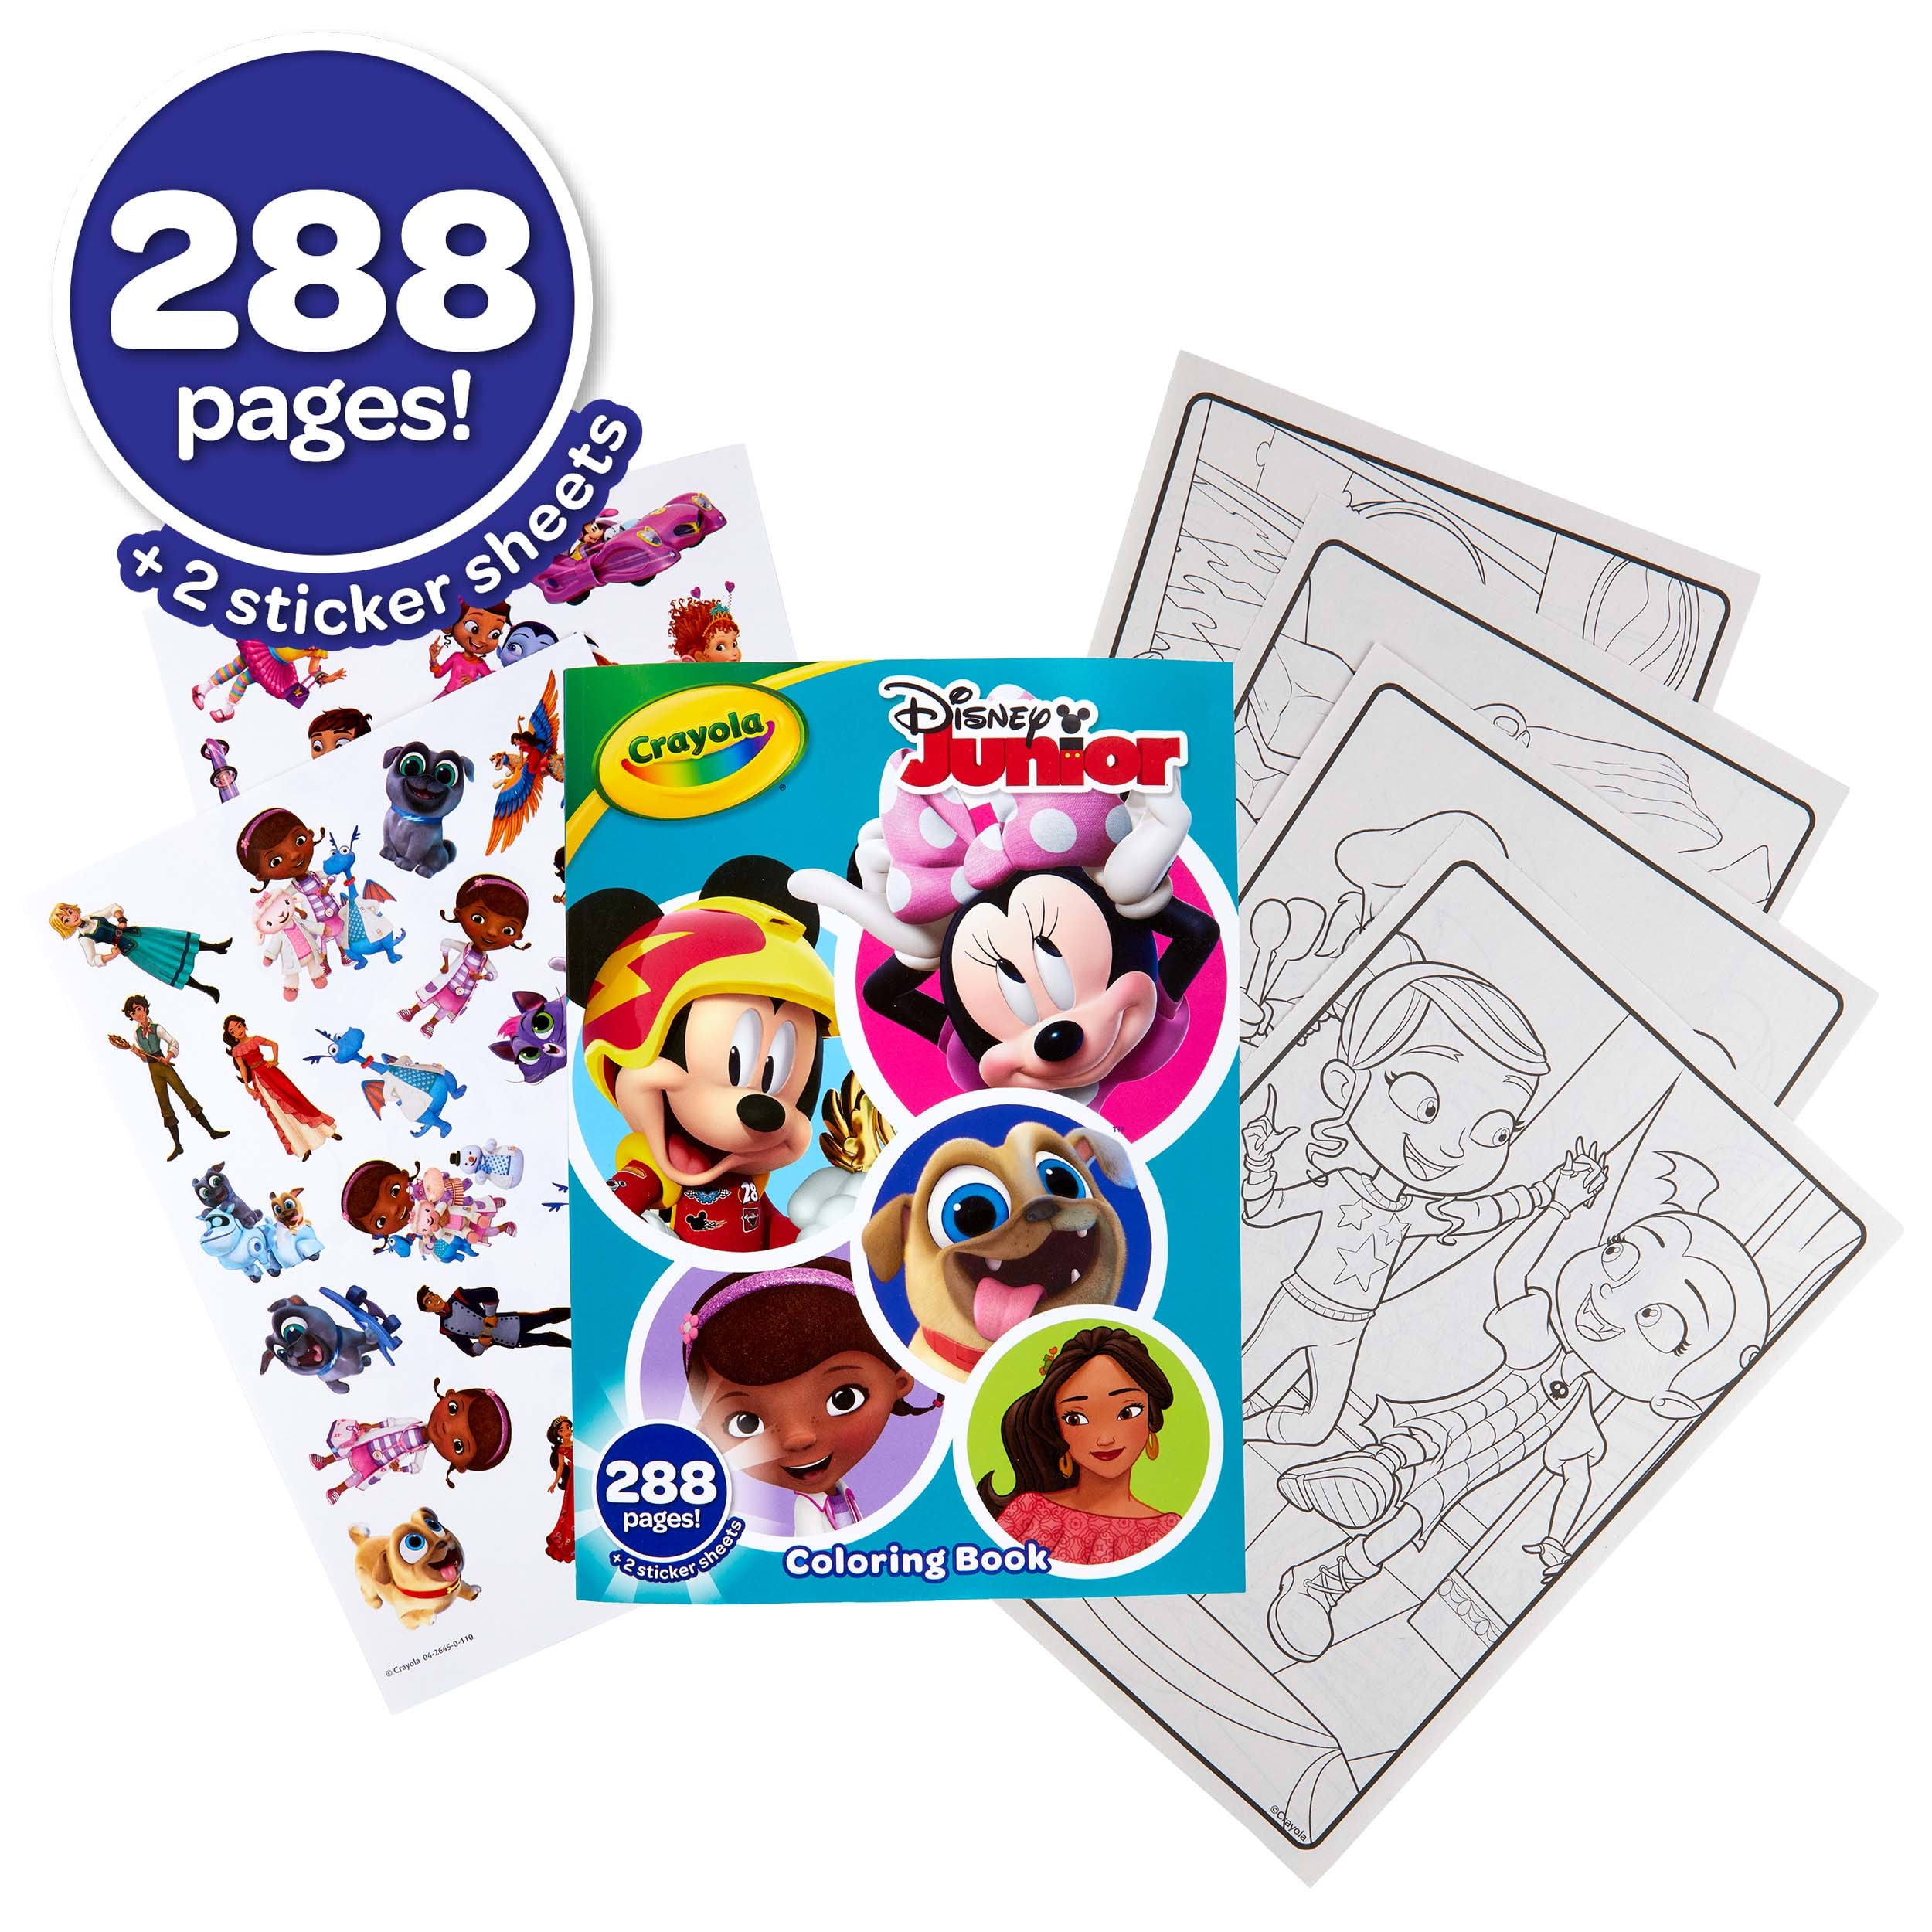 Crayola Disney Animation Studios Coloring Book